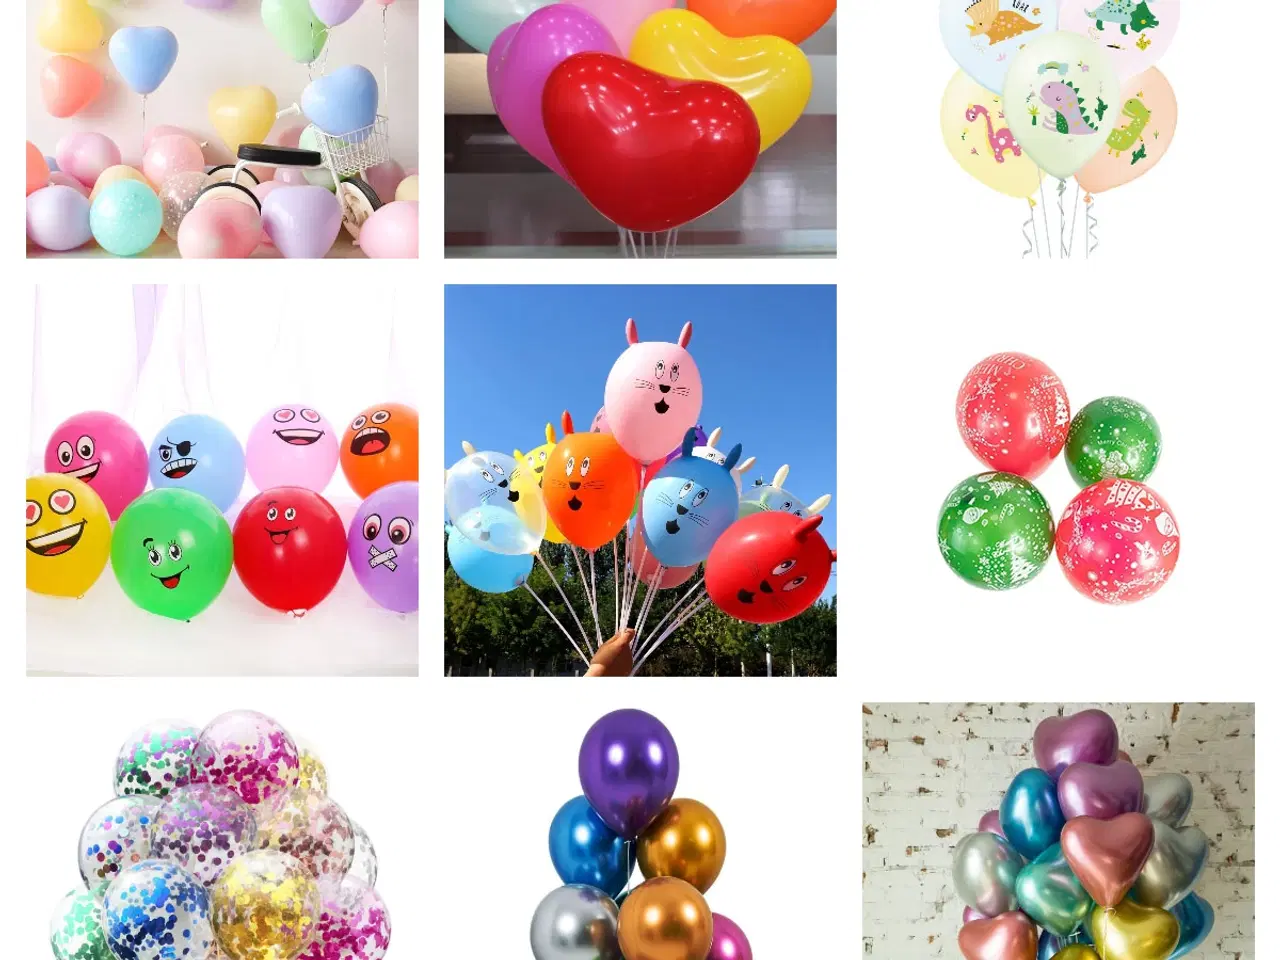 Billede 7 - Køb et ballonstativ og få gratis balloner, gælder 